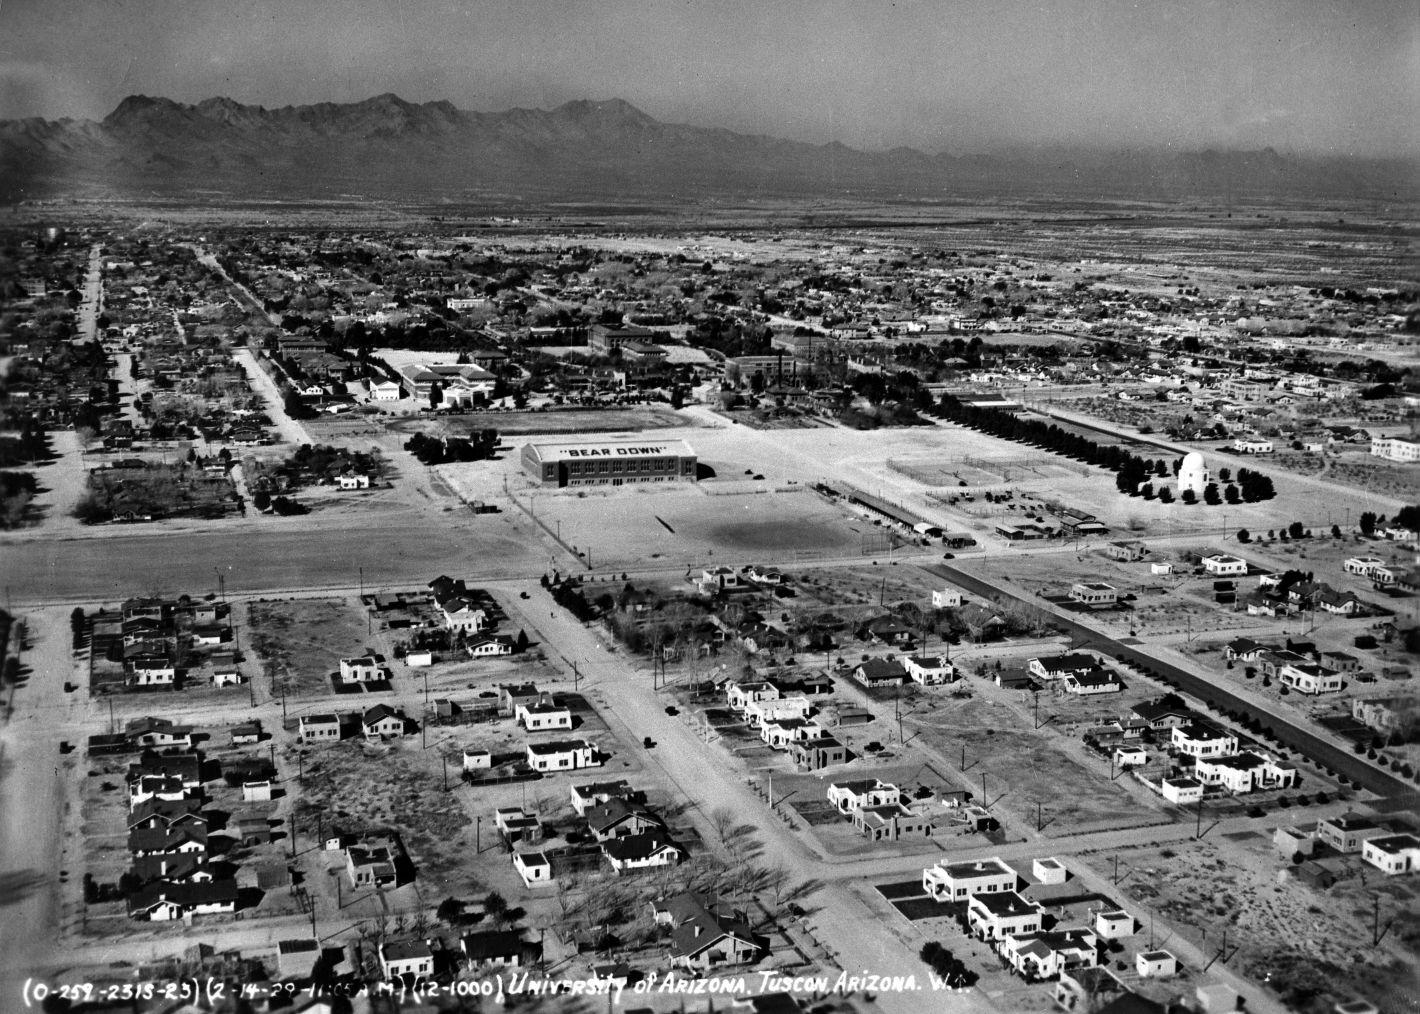 1929 aerial photos of Tucson